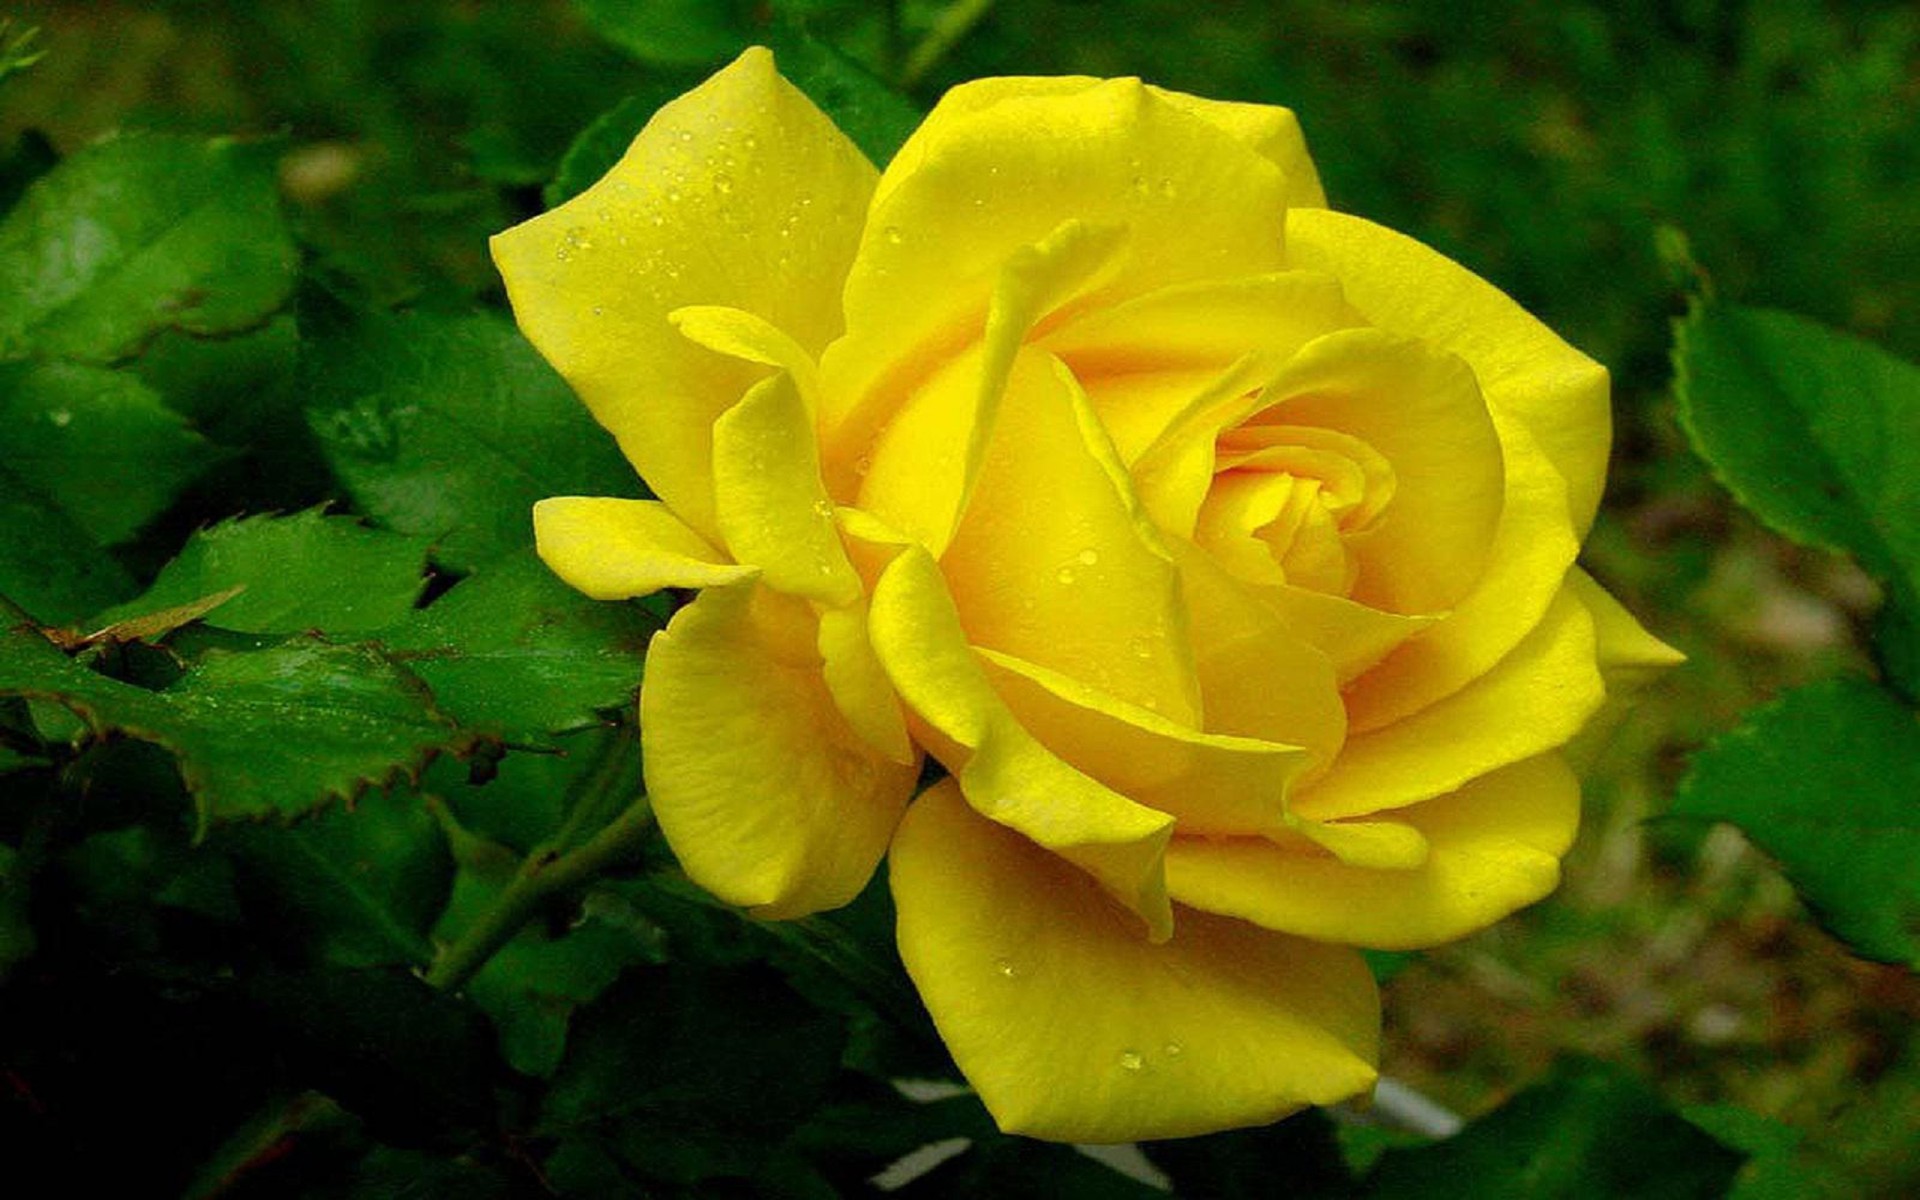 große rosentapete,blume,blühende pflanze,julia kind stand auf,blütenblatt,gelb